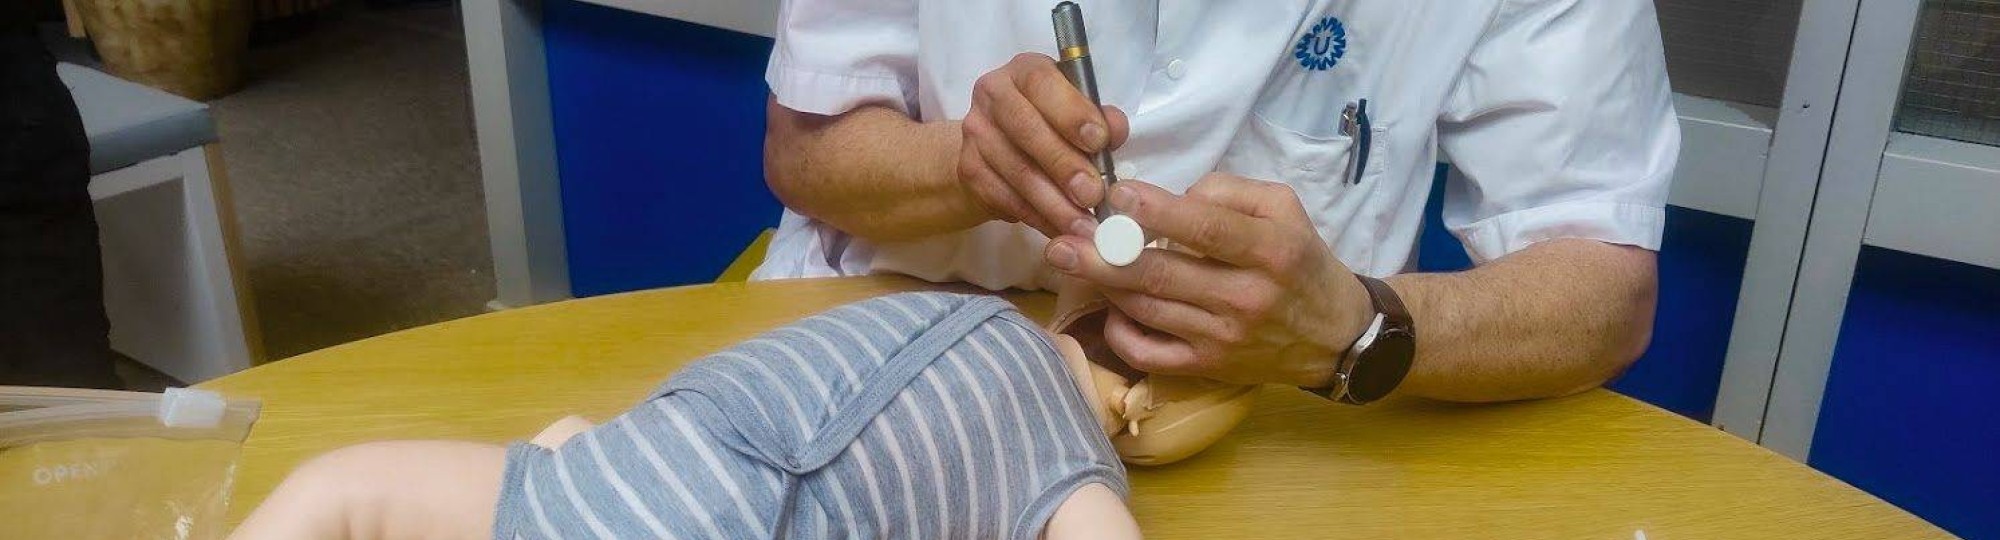 Reanimatiepop HAN-student succesvol getest in kinderziekenhuis